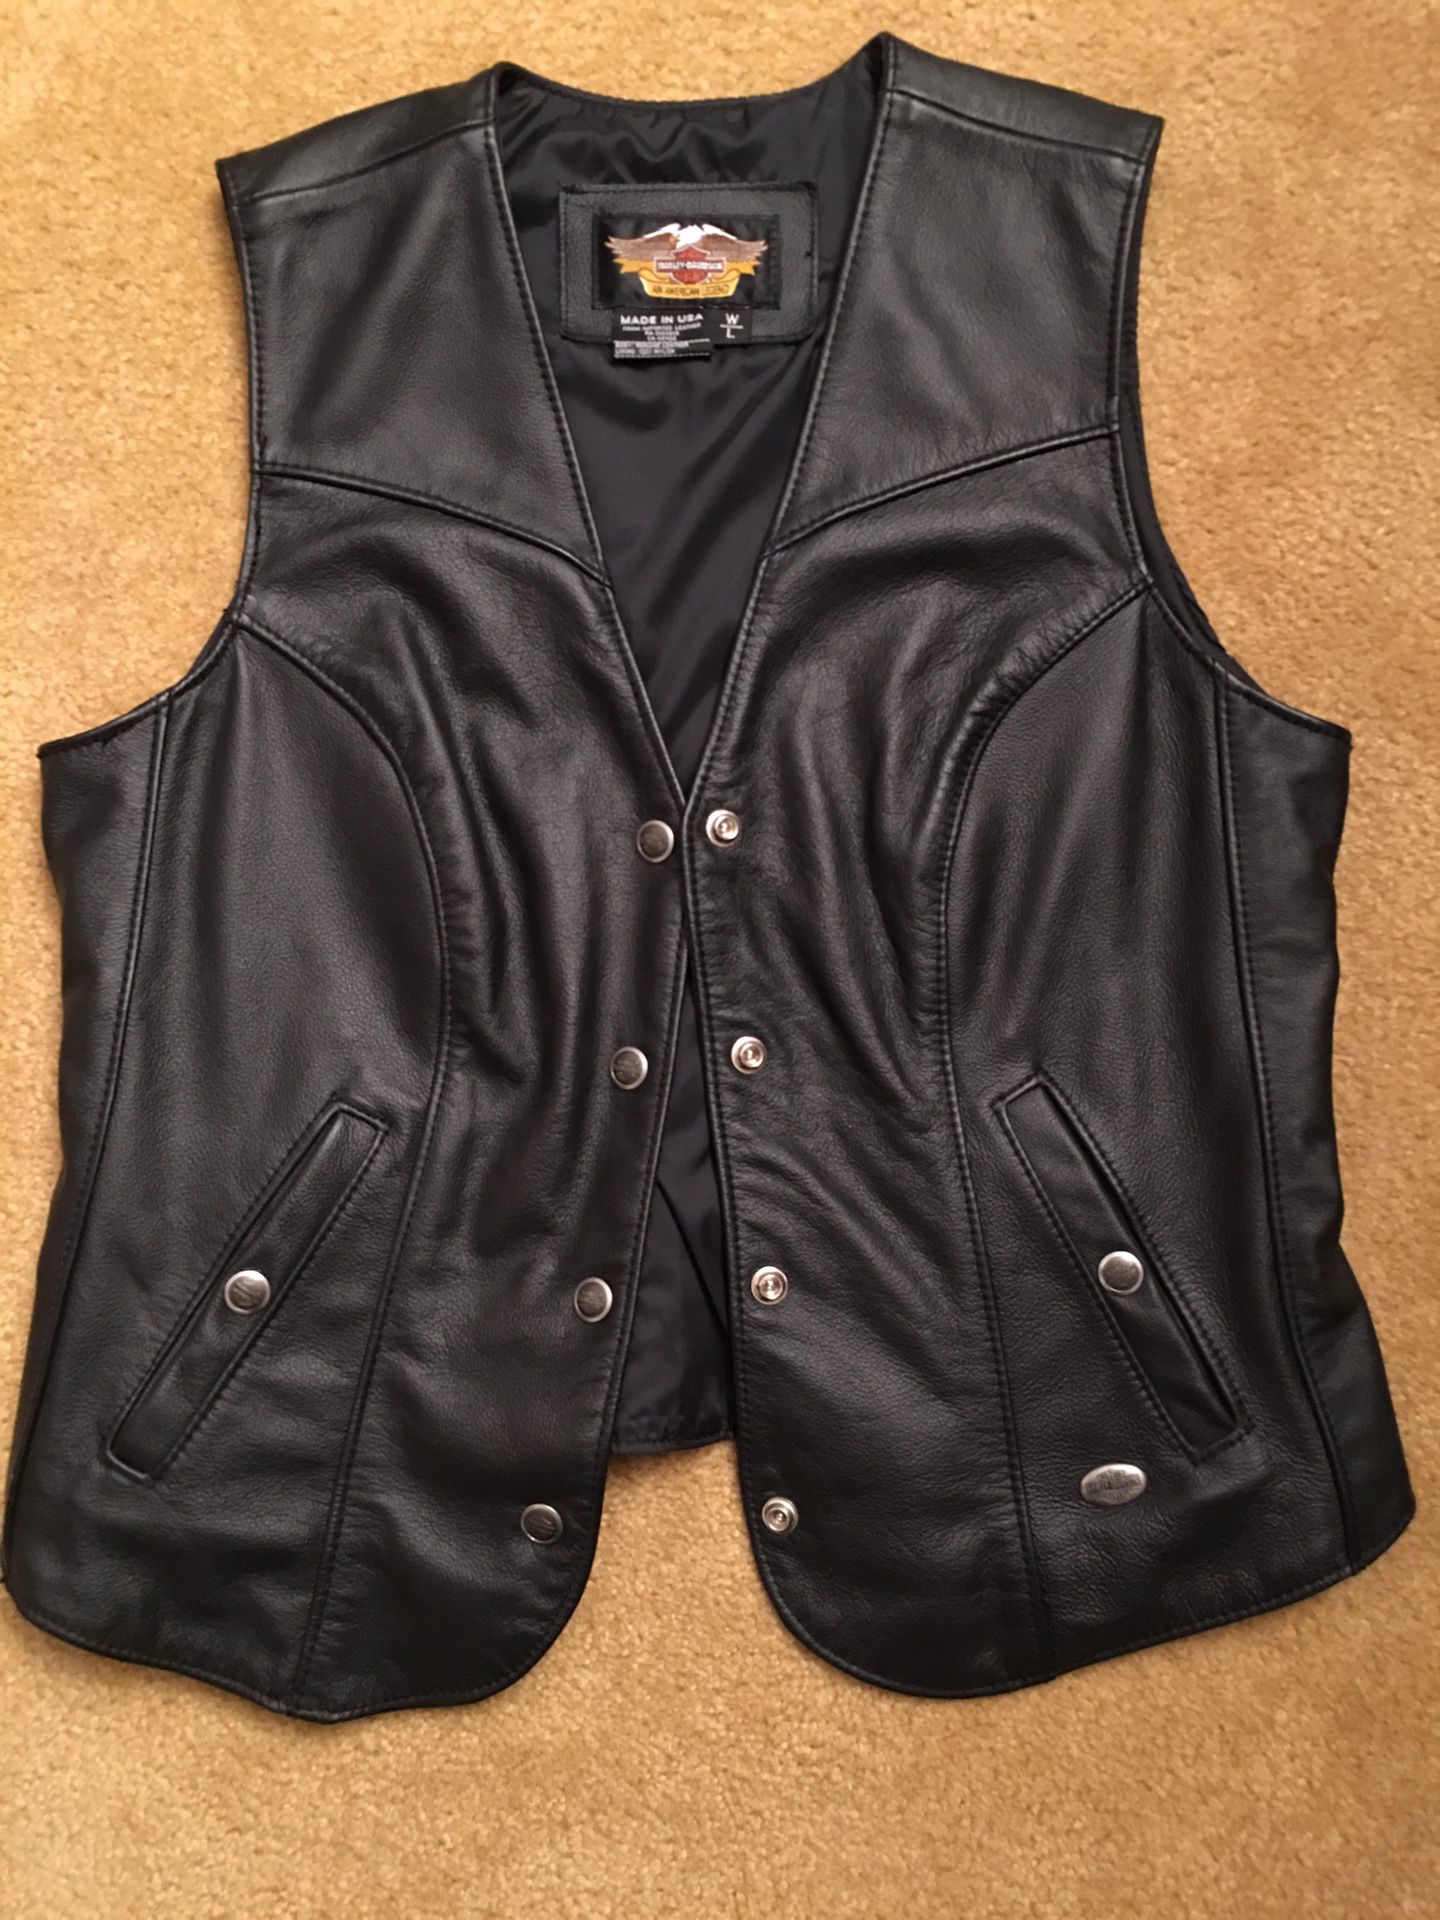 Women’s Large Harley Davidson Black leather Vest